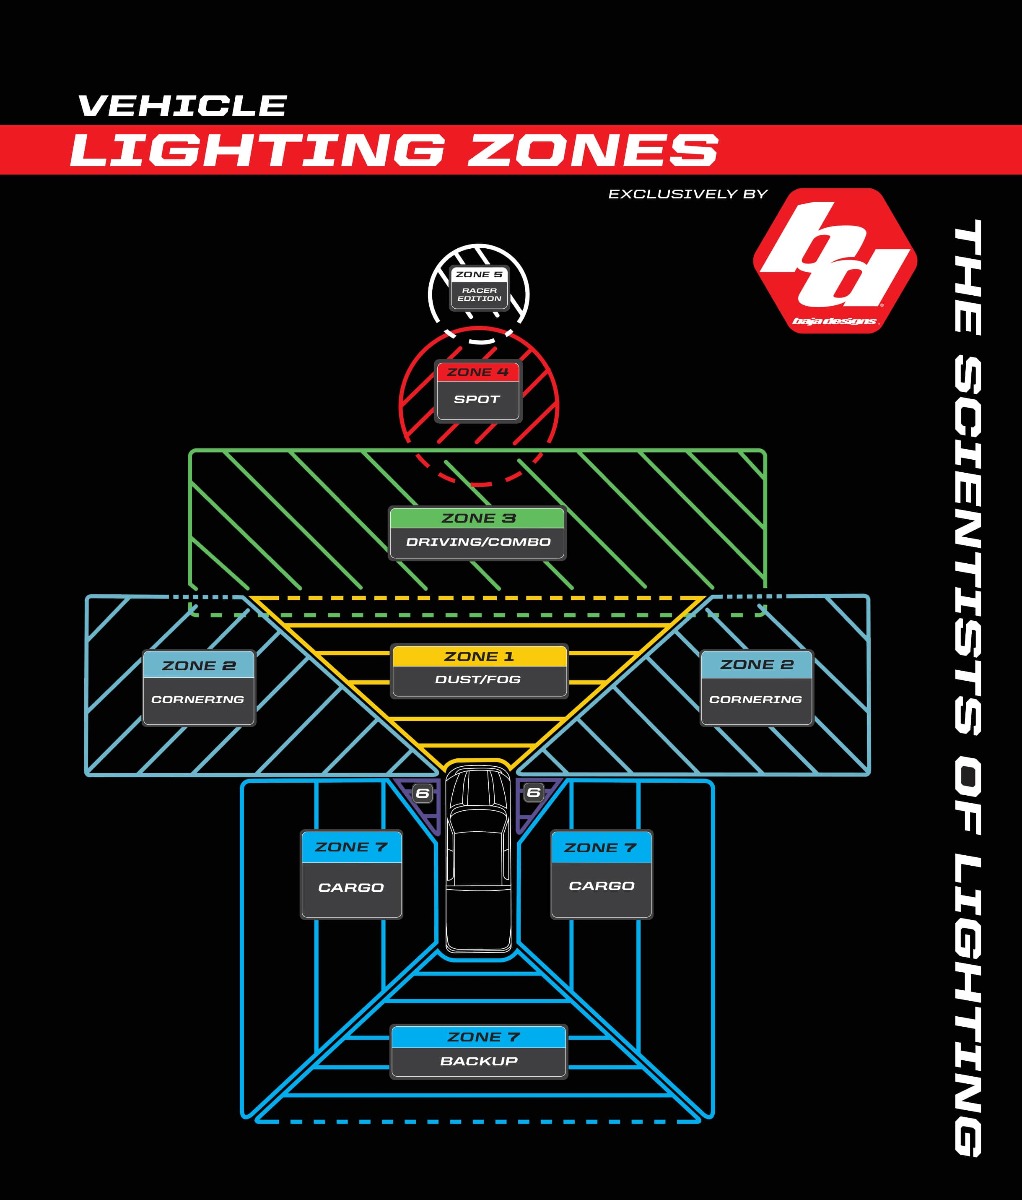 Lighting Zones